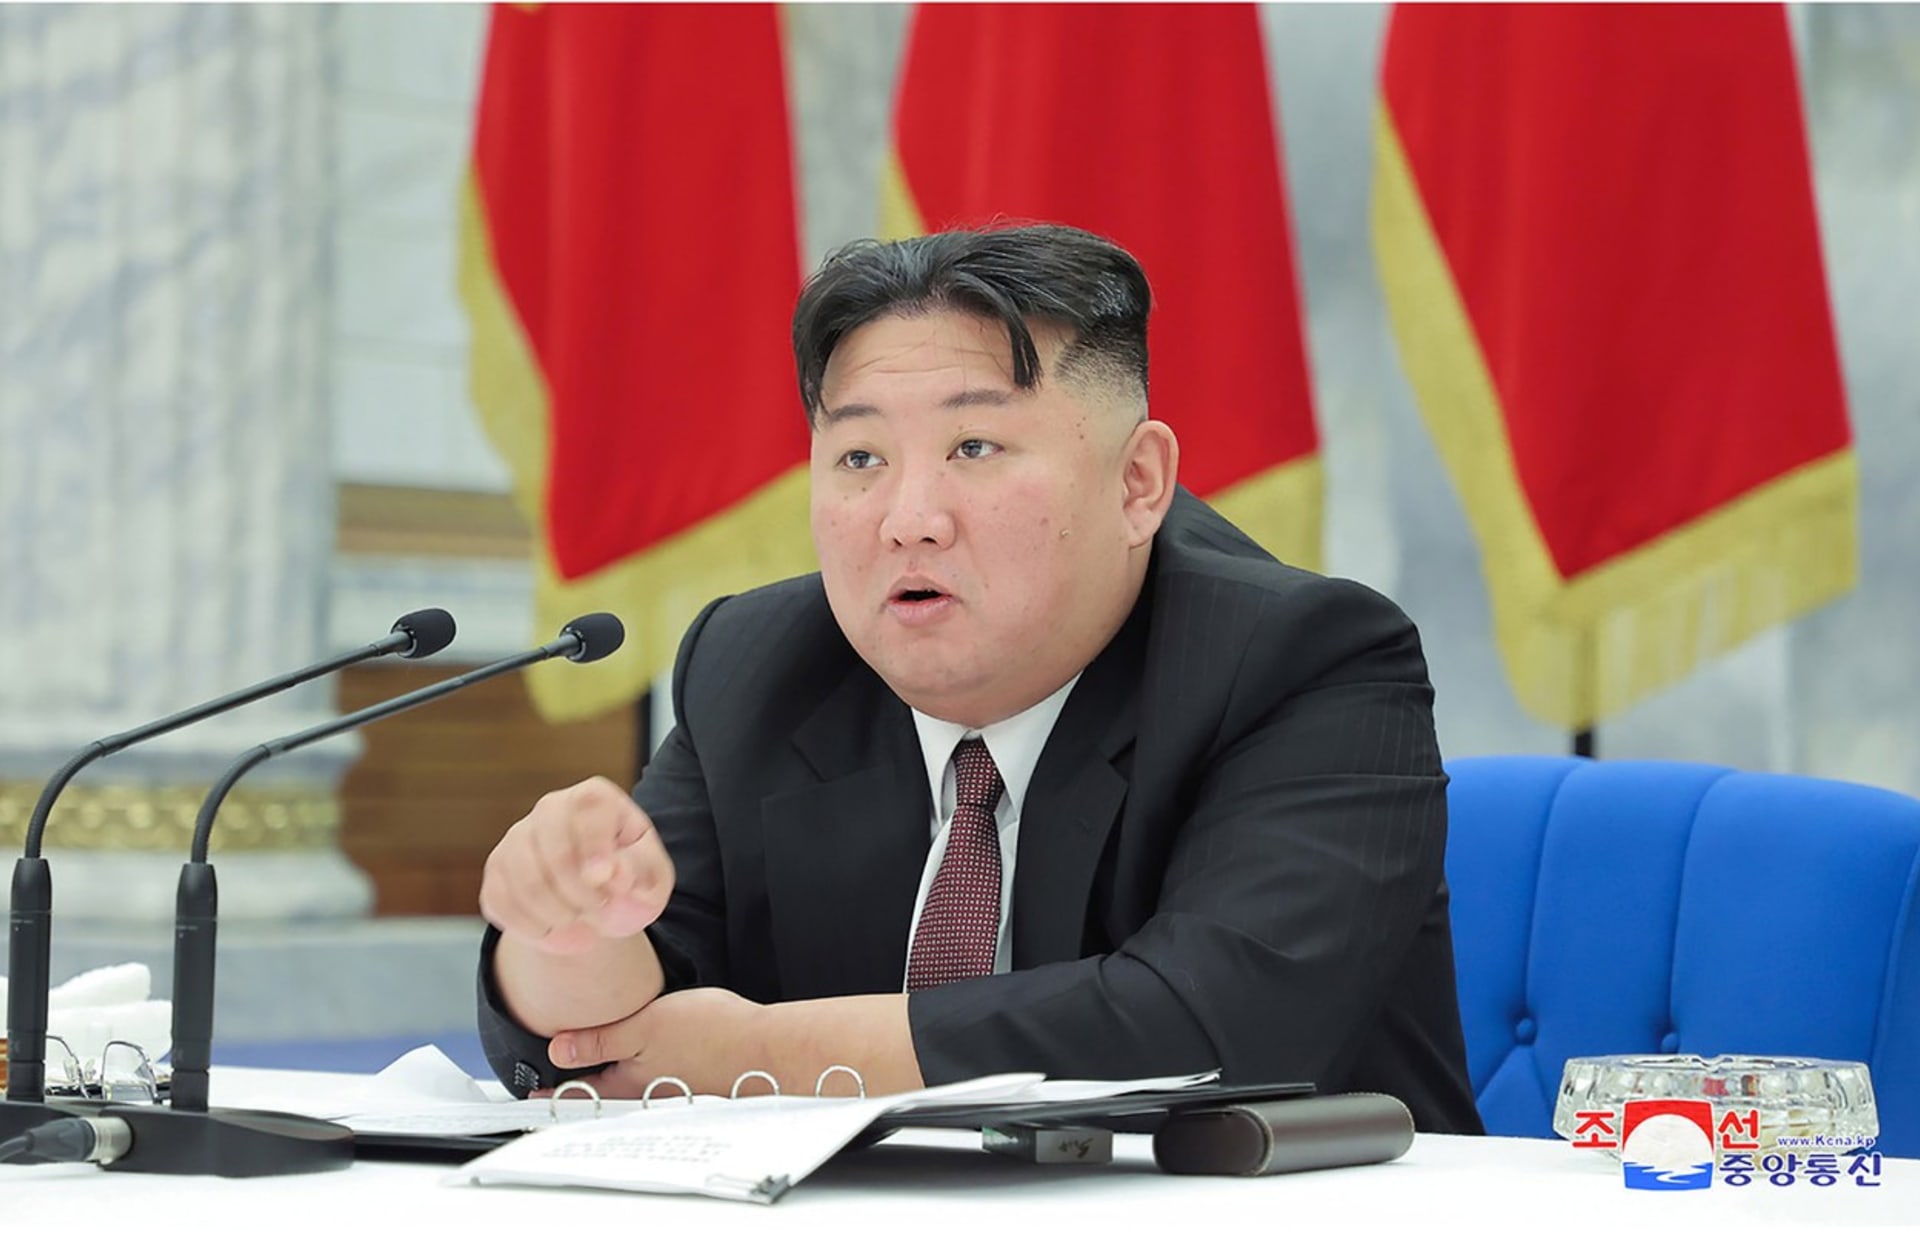 Severokorejsky vudce Kim Cong-un